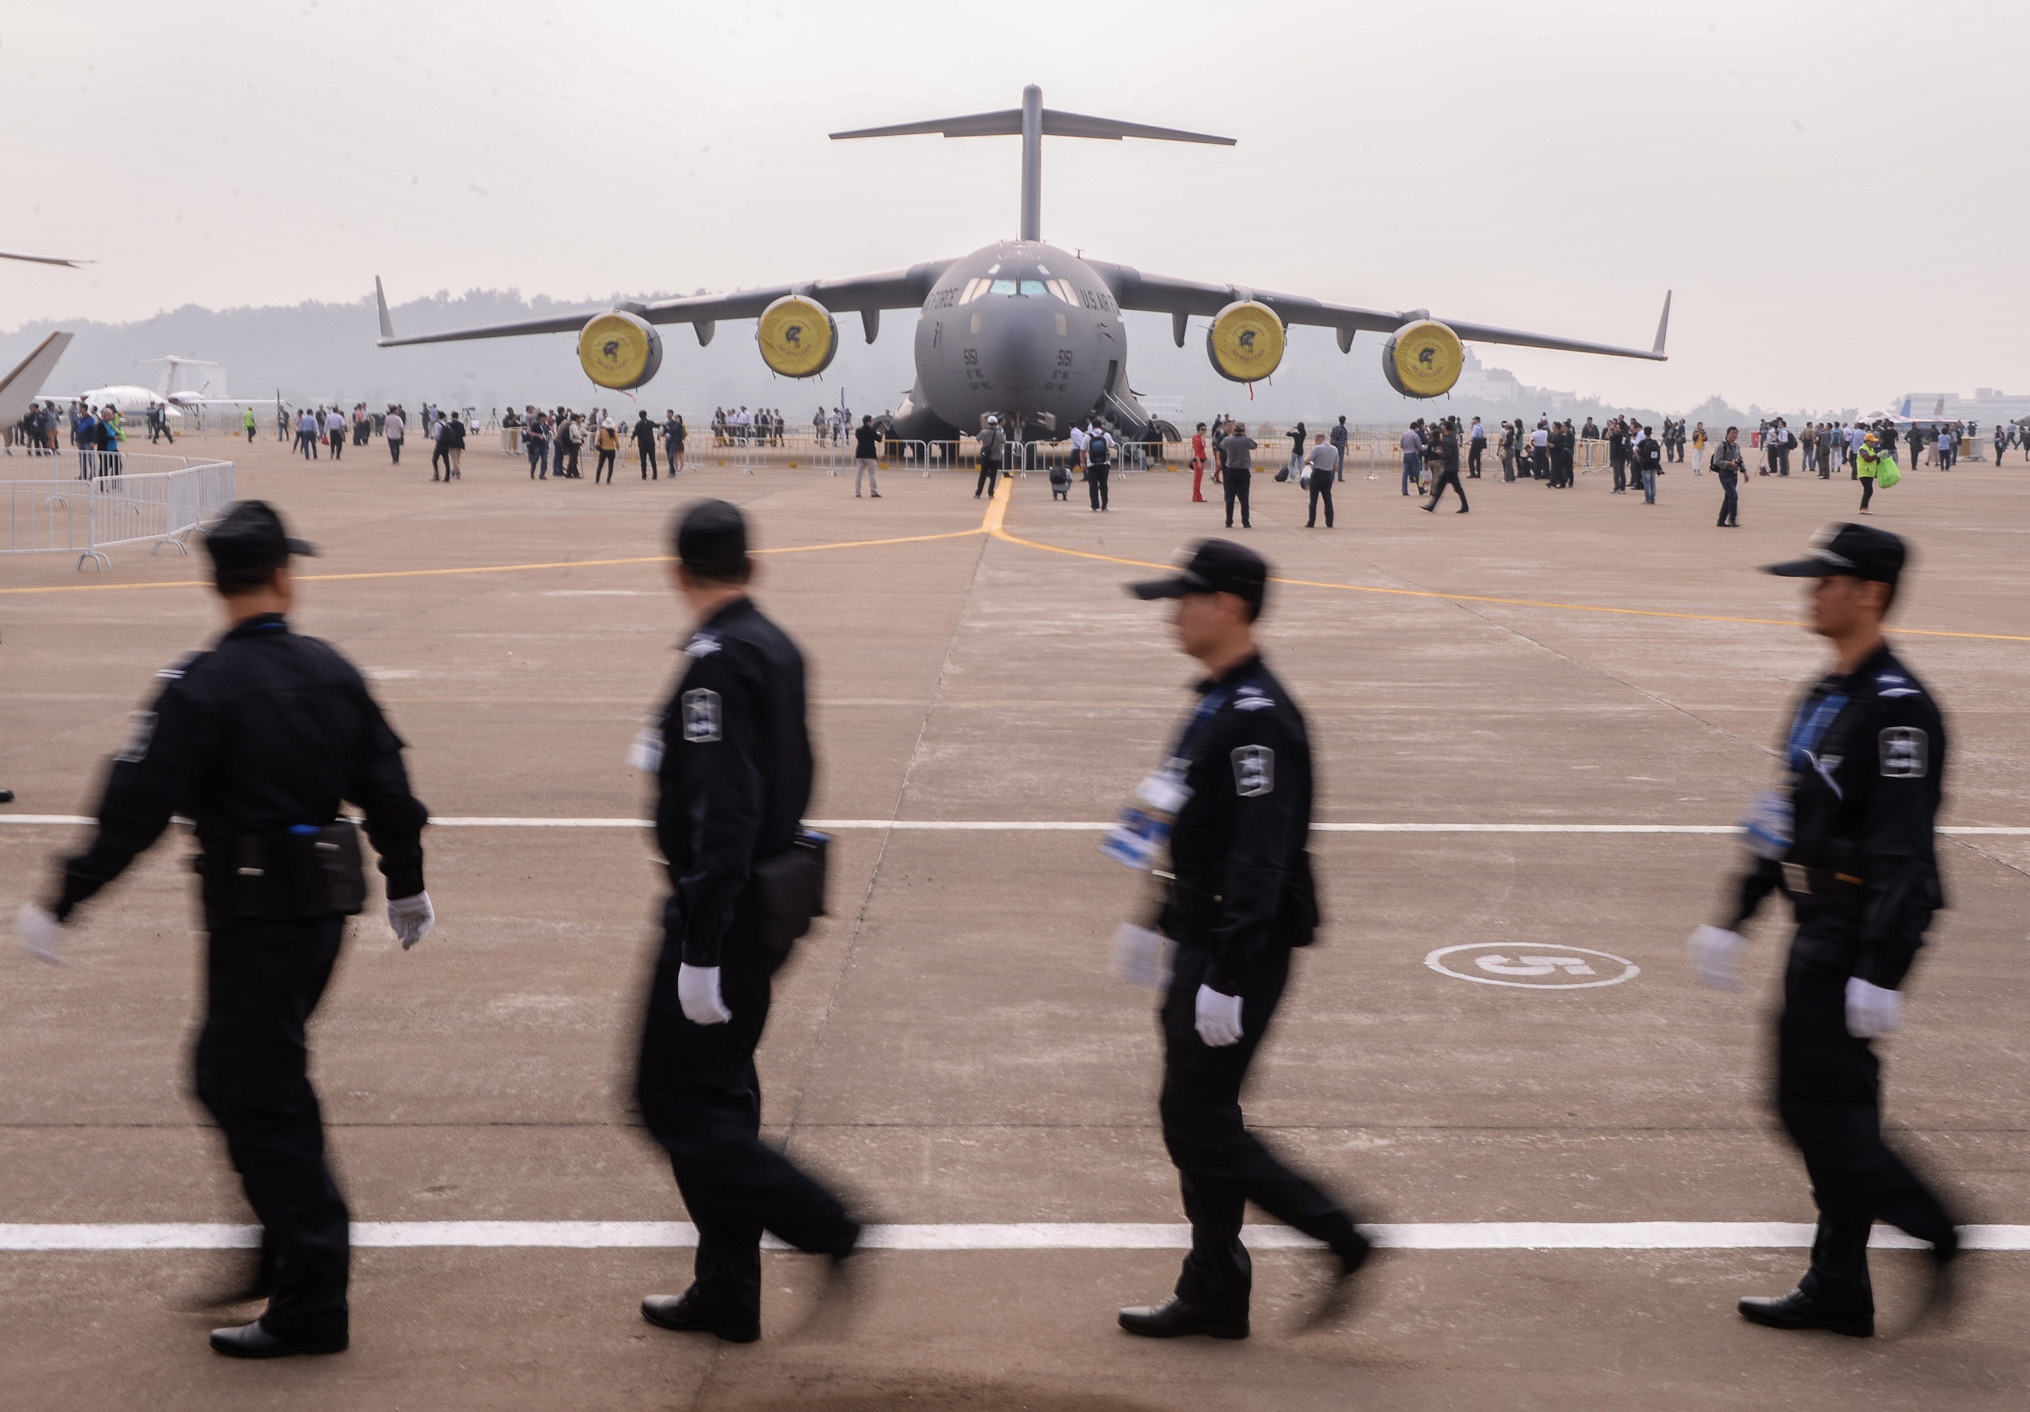 A US Air Force aircraft takes part in the Zhuhai air show. Photo: Xinhua